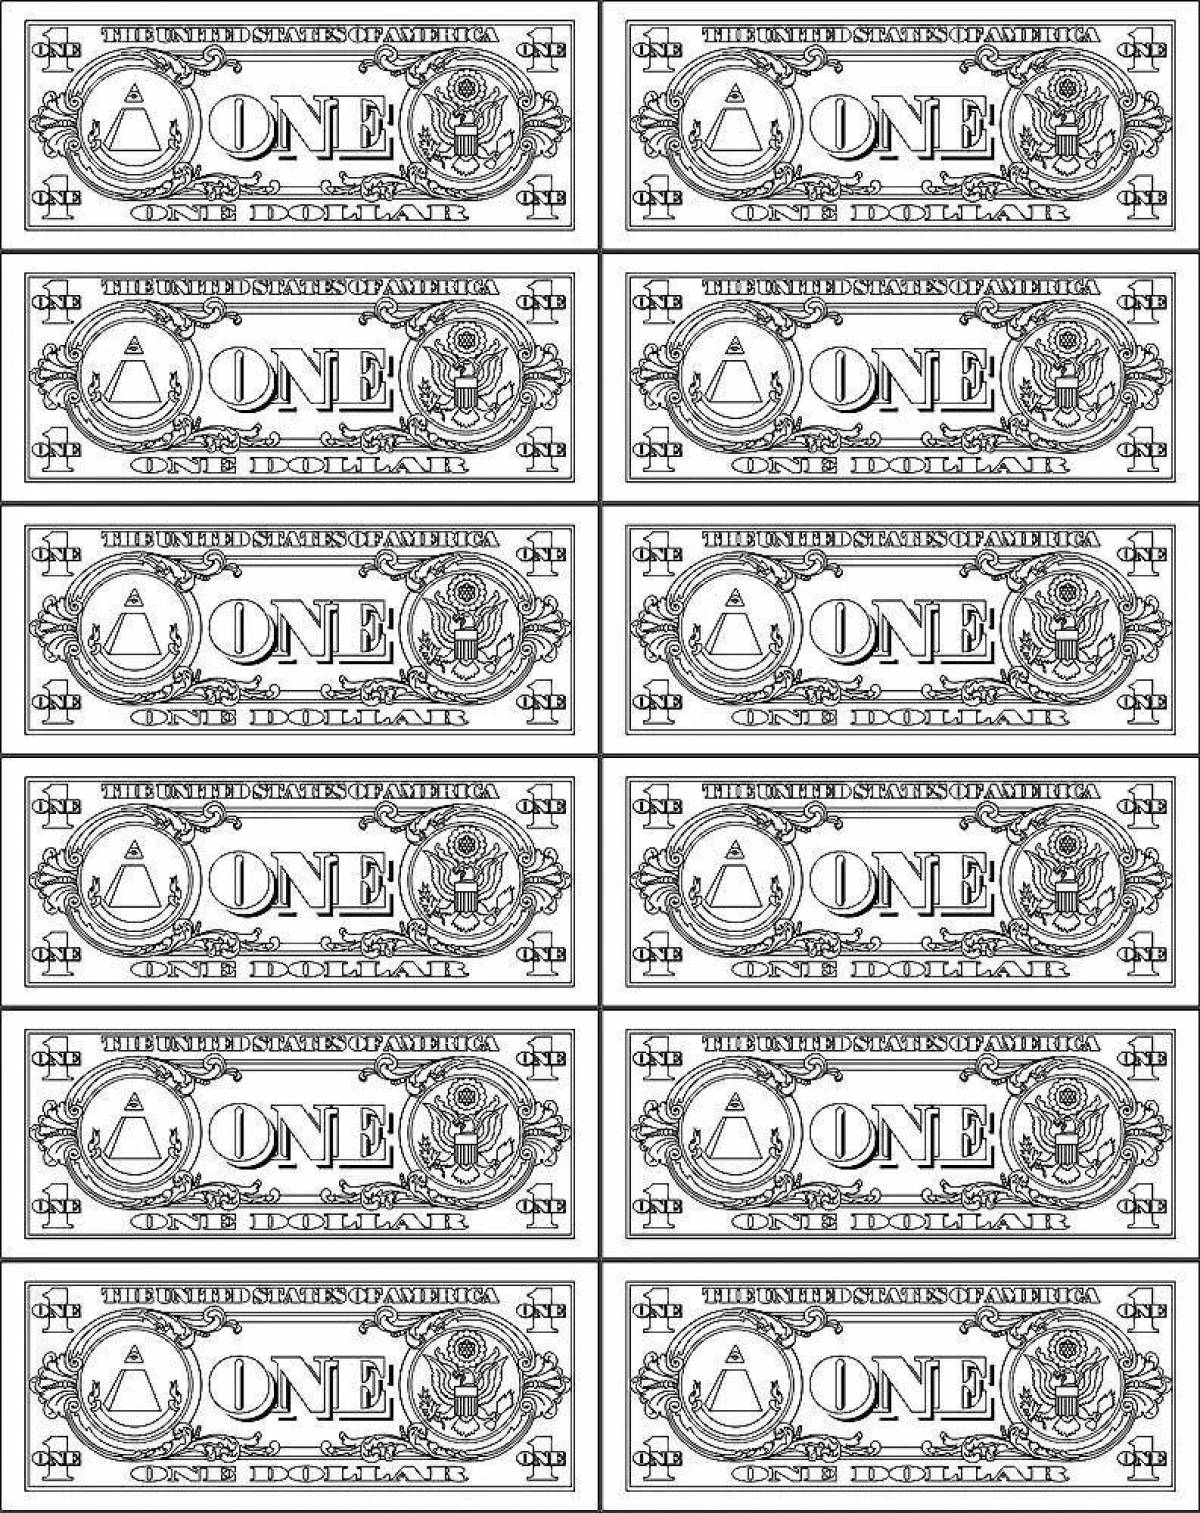 Banknotes #2